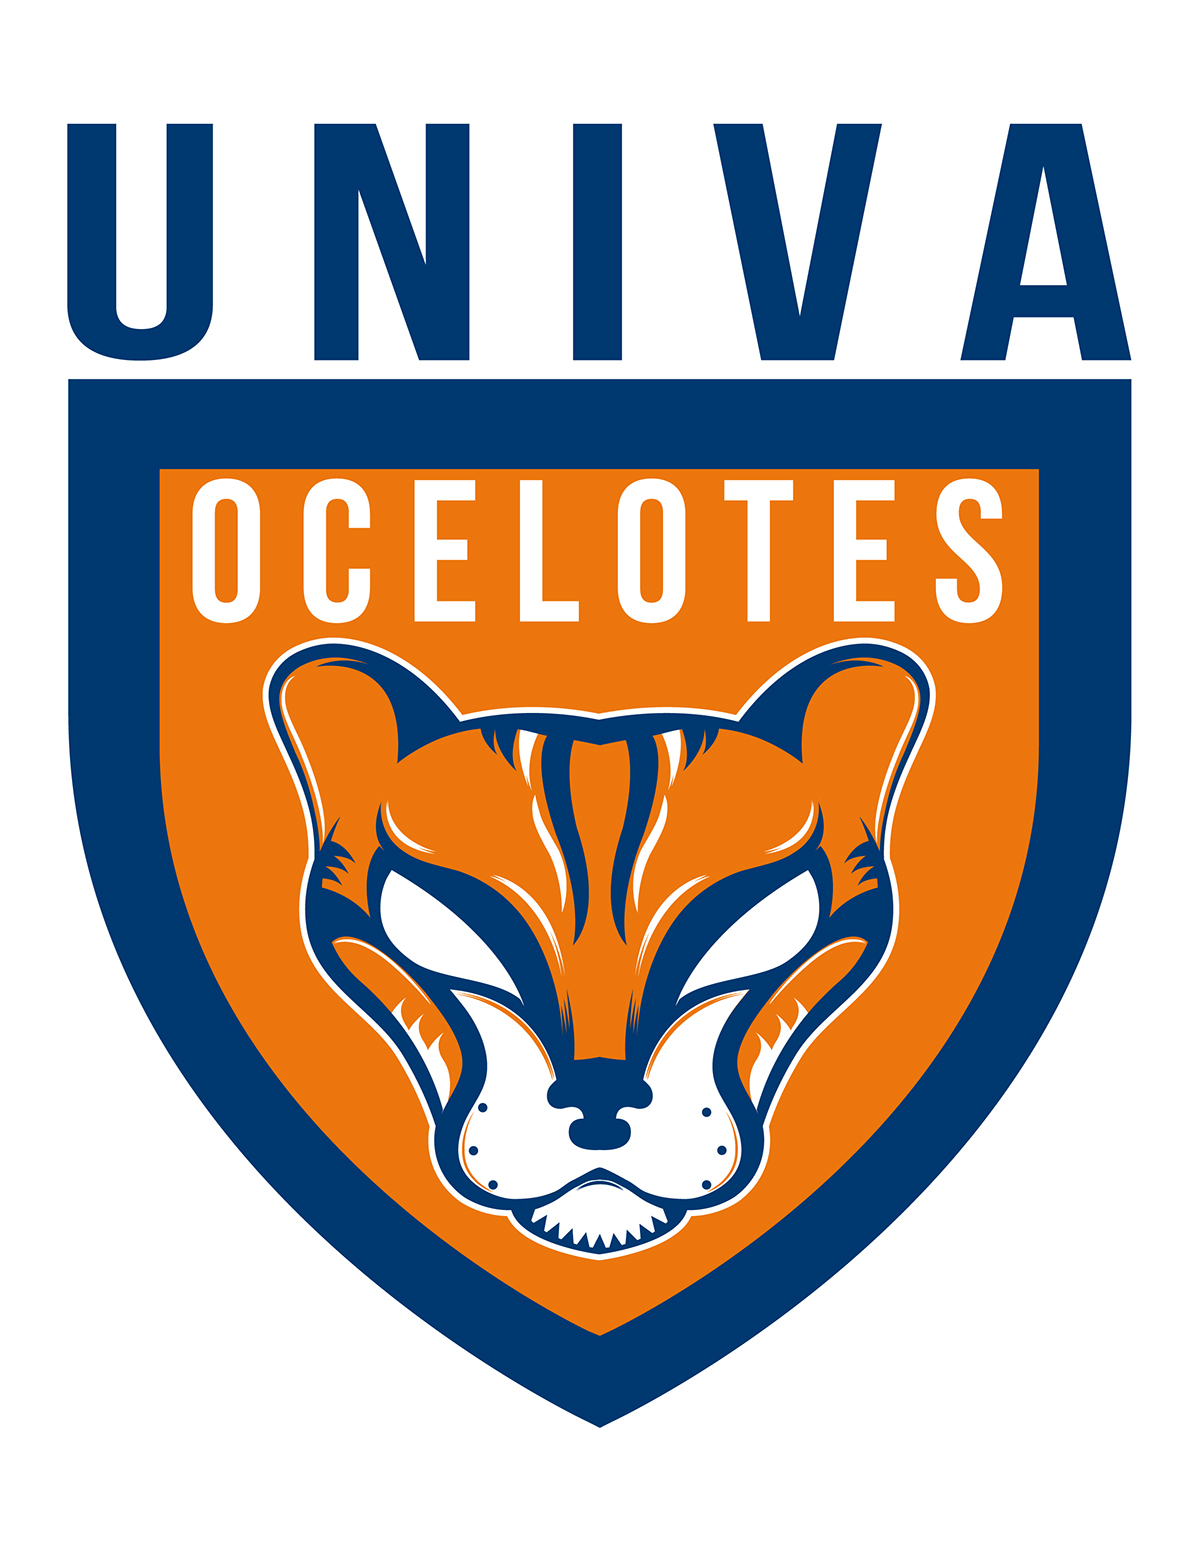 Ocelote univa Futbol futbol logo soccer logo